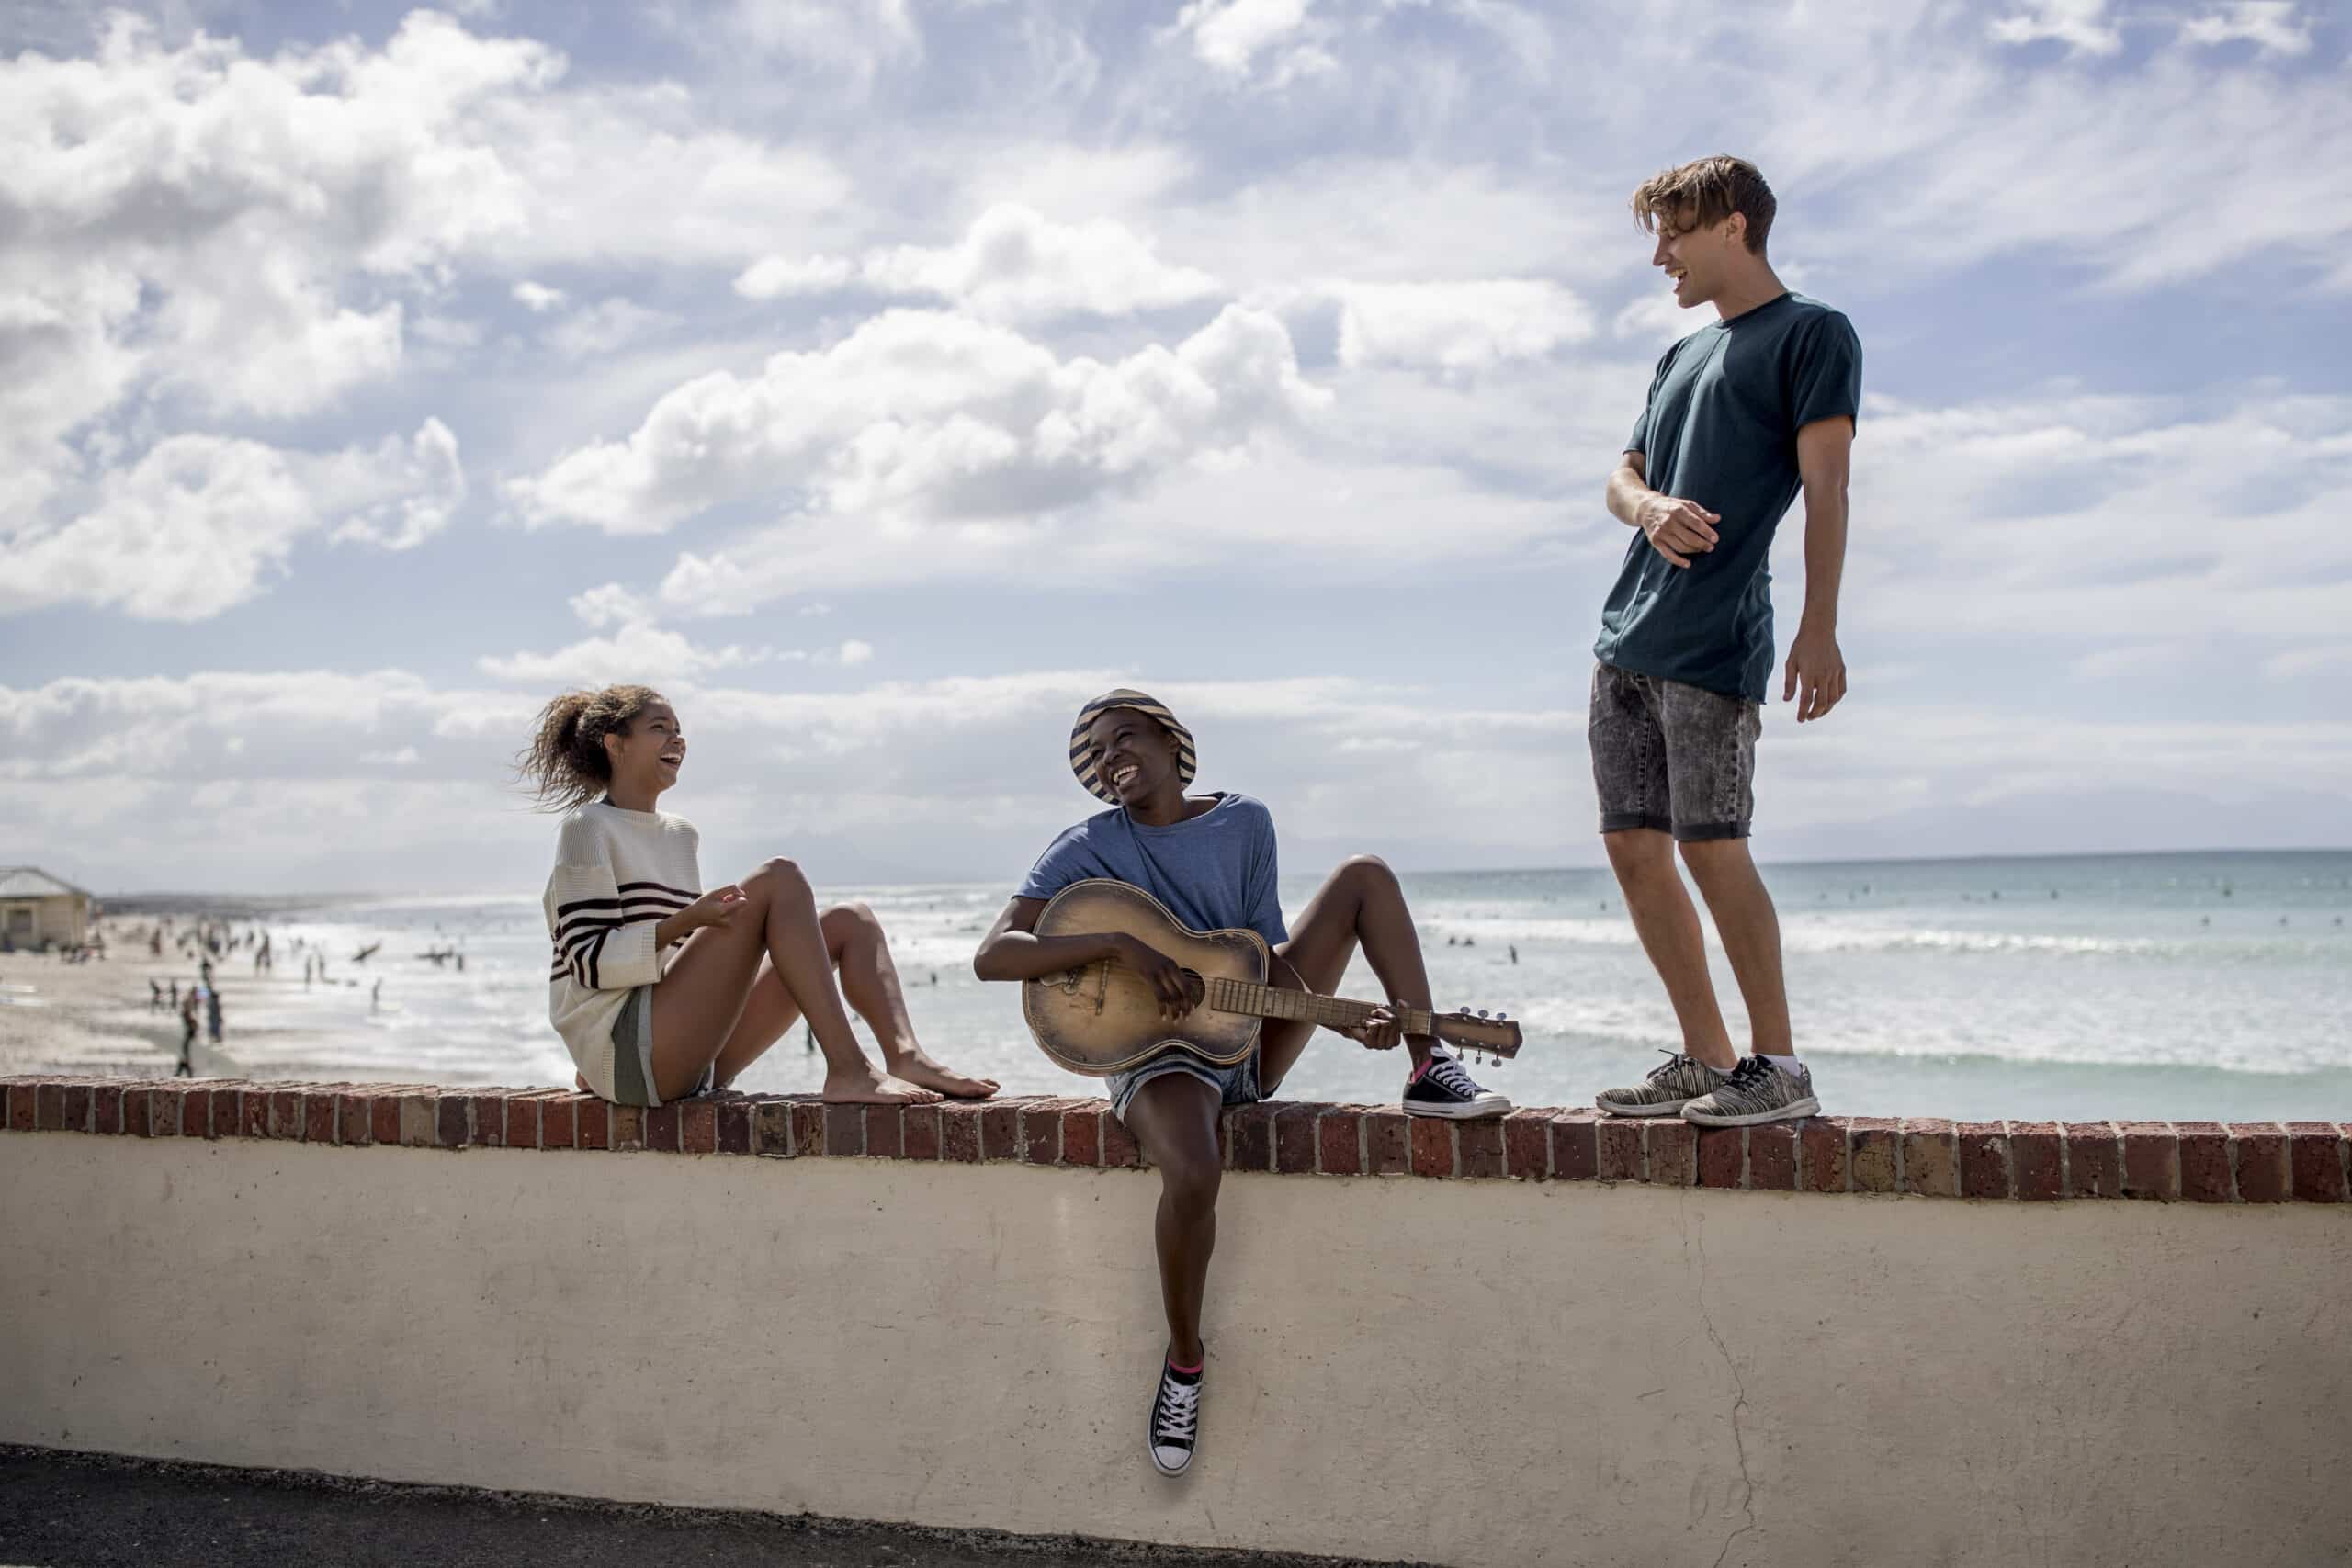 Drei Freunde genießen einen sonnigen Tag am Strand; einer spielt Gitarre, während die anderen zuhören, mit dem Meer und den Strandbesuchern im Hintergrund. © Fotografie Tomas Rodriguez